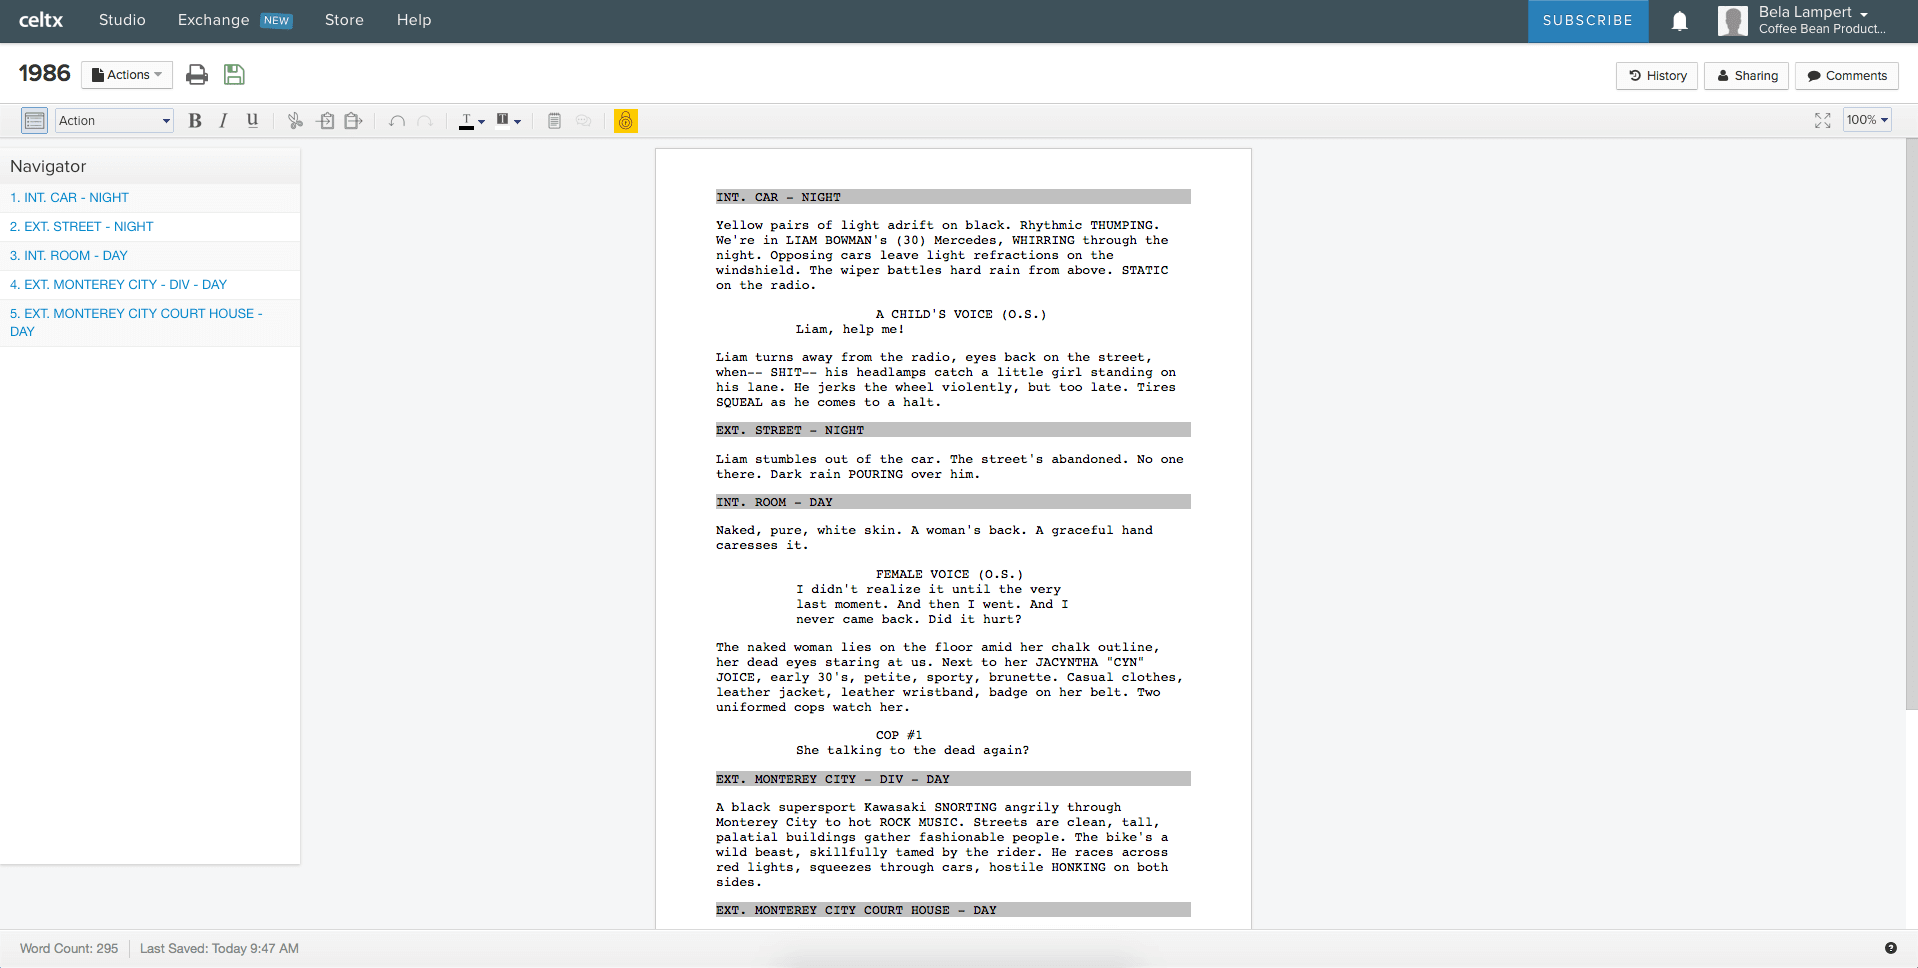 celtx script format settings